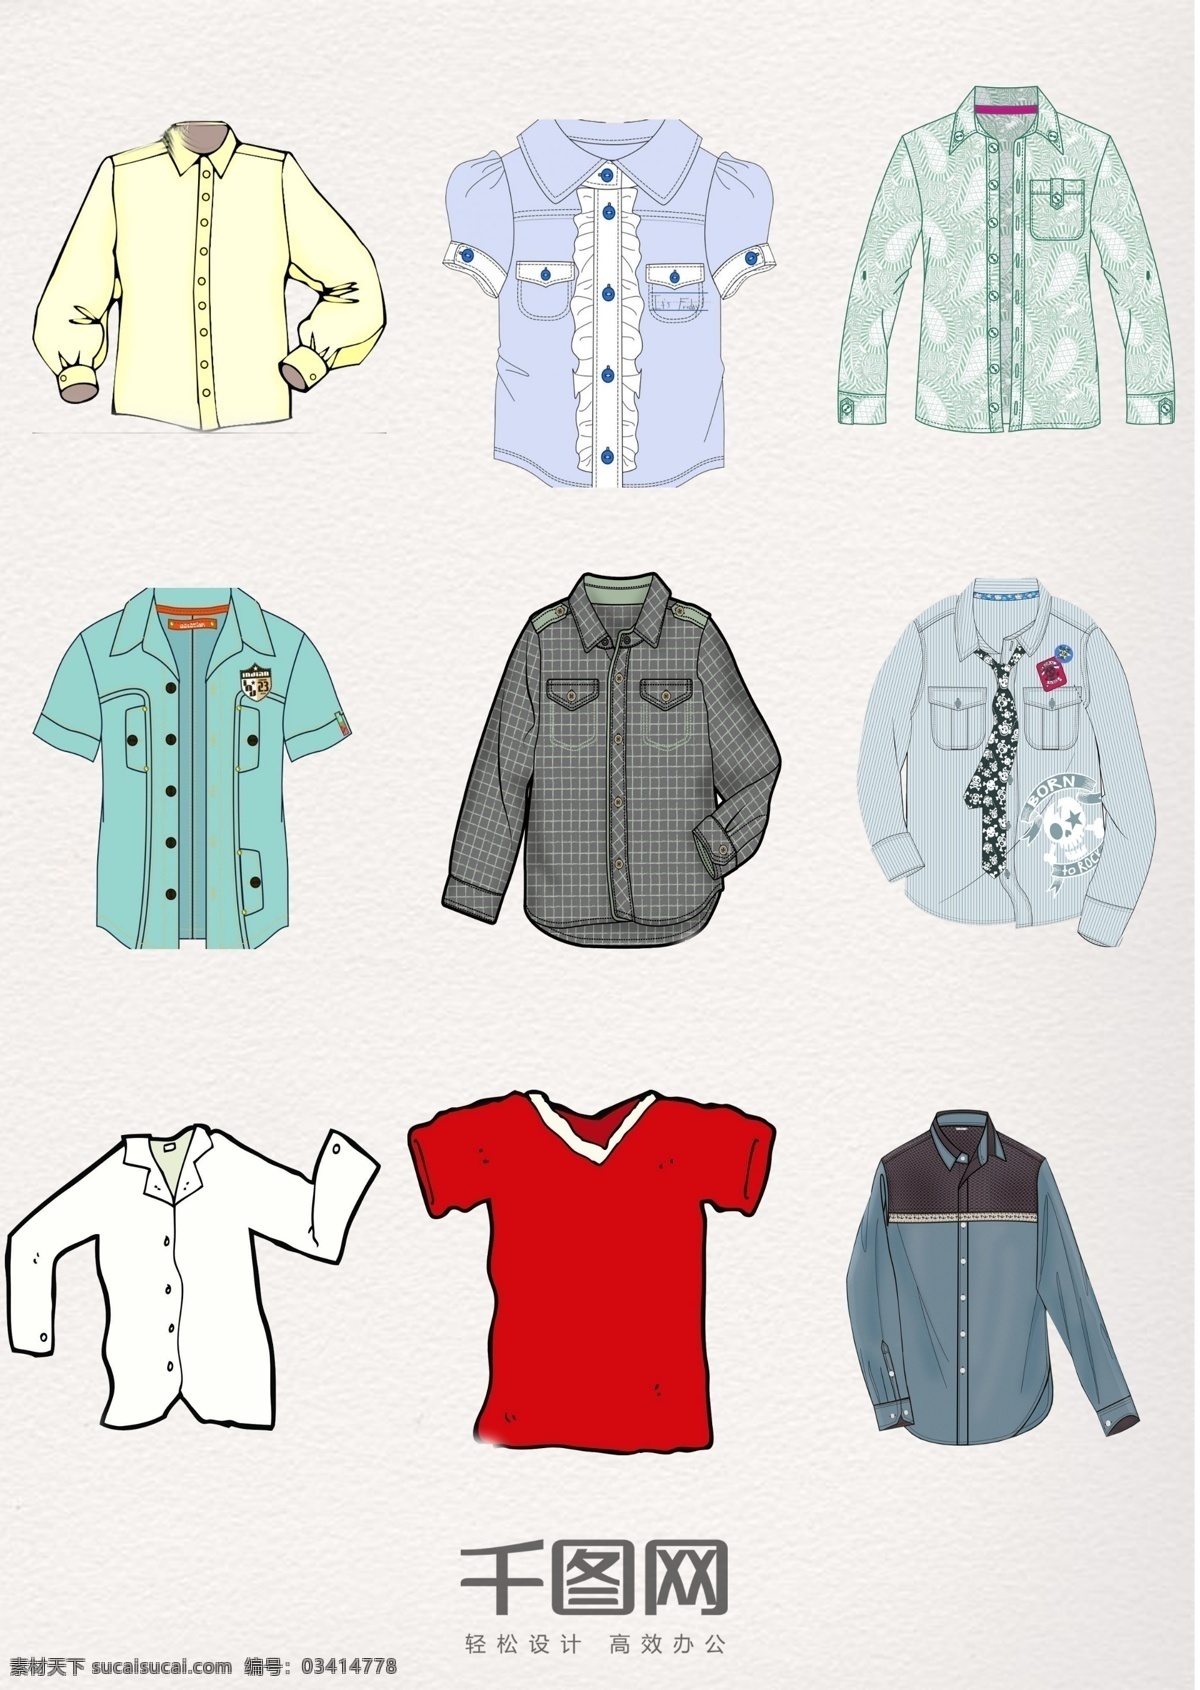 衣物 保暖 衬衫 图案 元素 集合 彩色 卡通 衬衫图案 衬衫元素 衬衫集合